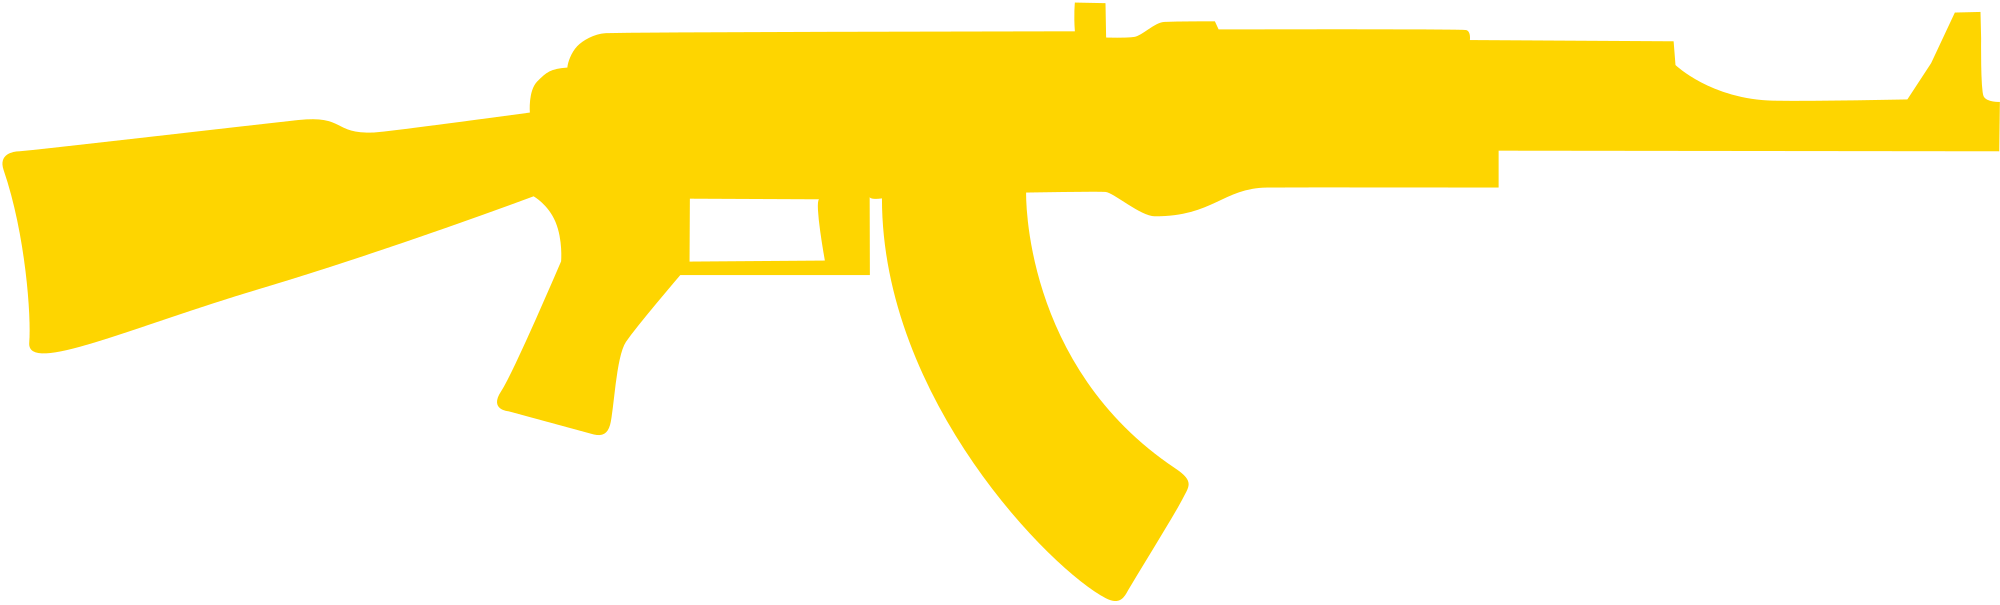 Open - Ak 47 Yellow Logo (2000x605), Png Download